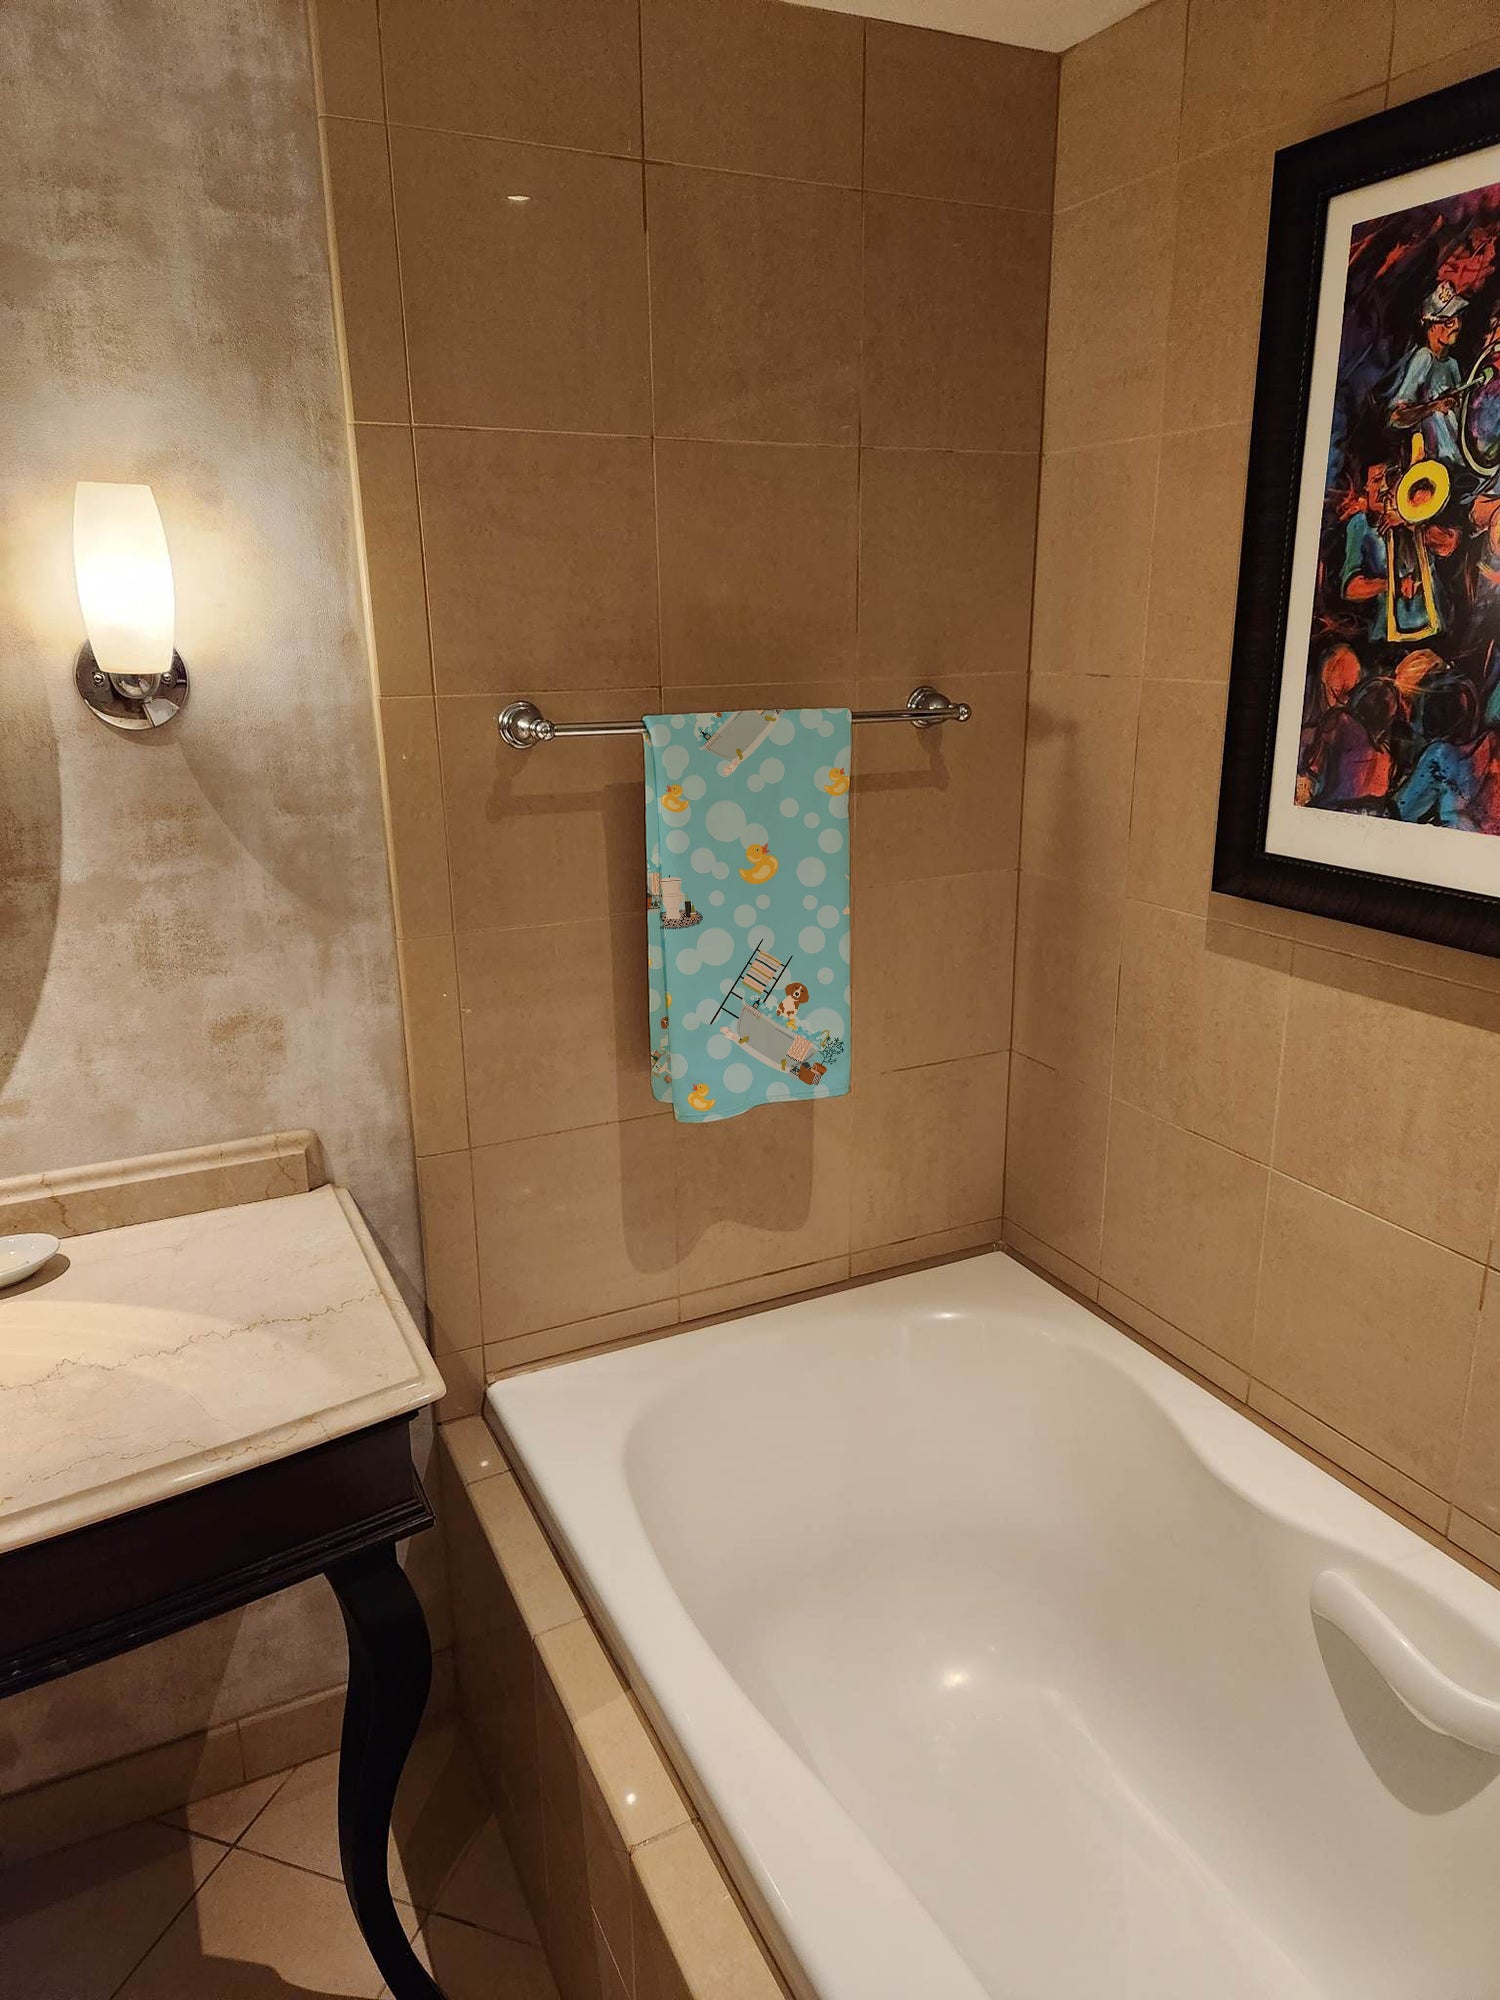 Buy this Brittany Spaniel in Bathtub Bath Towel Large